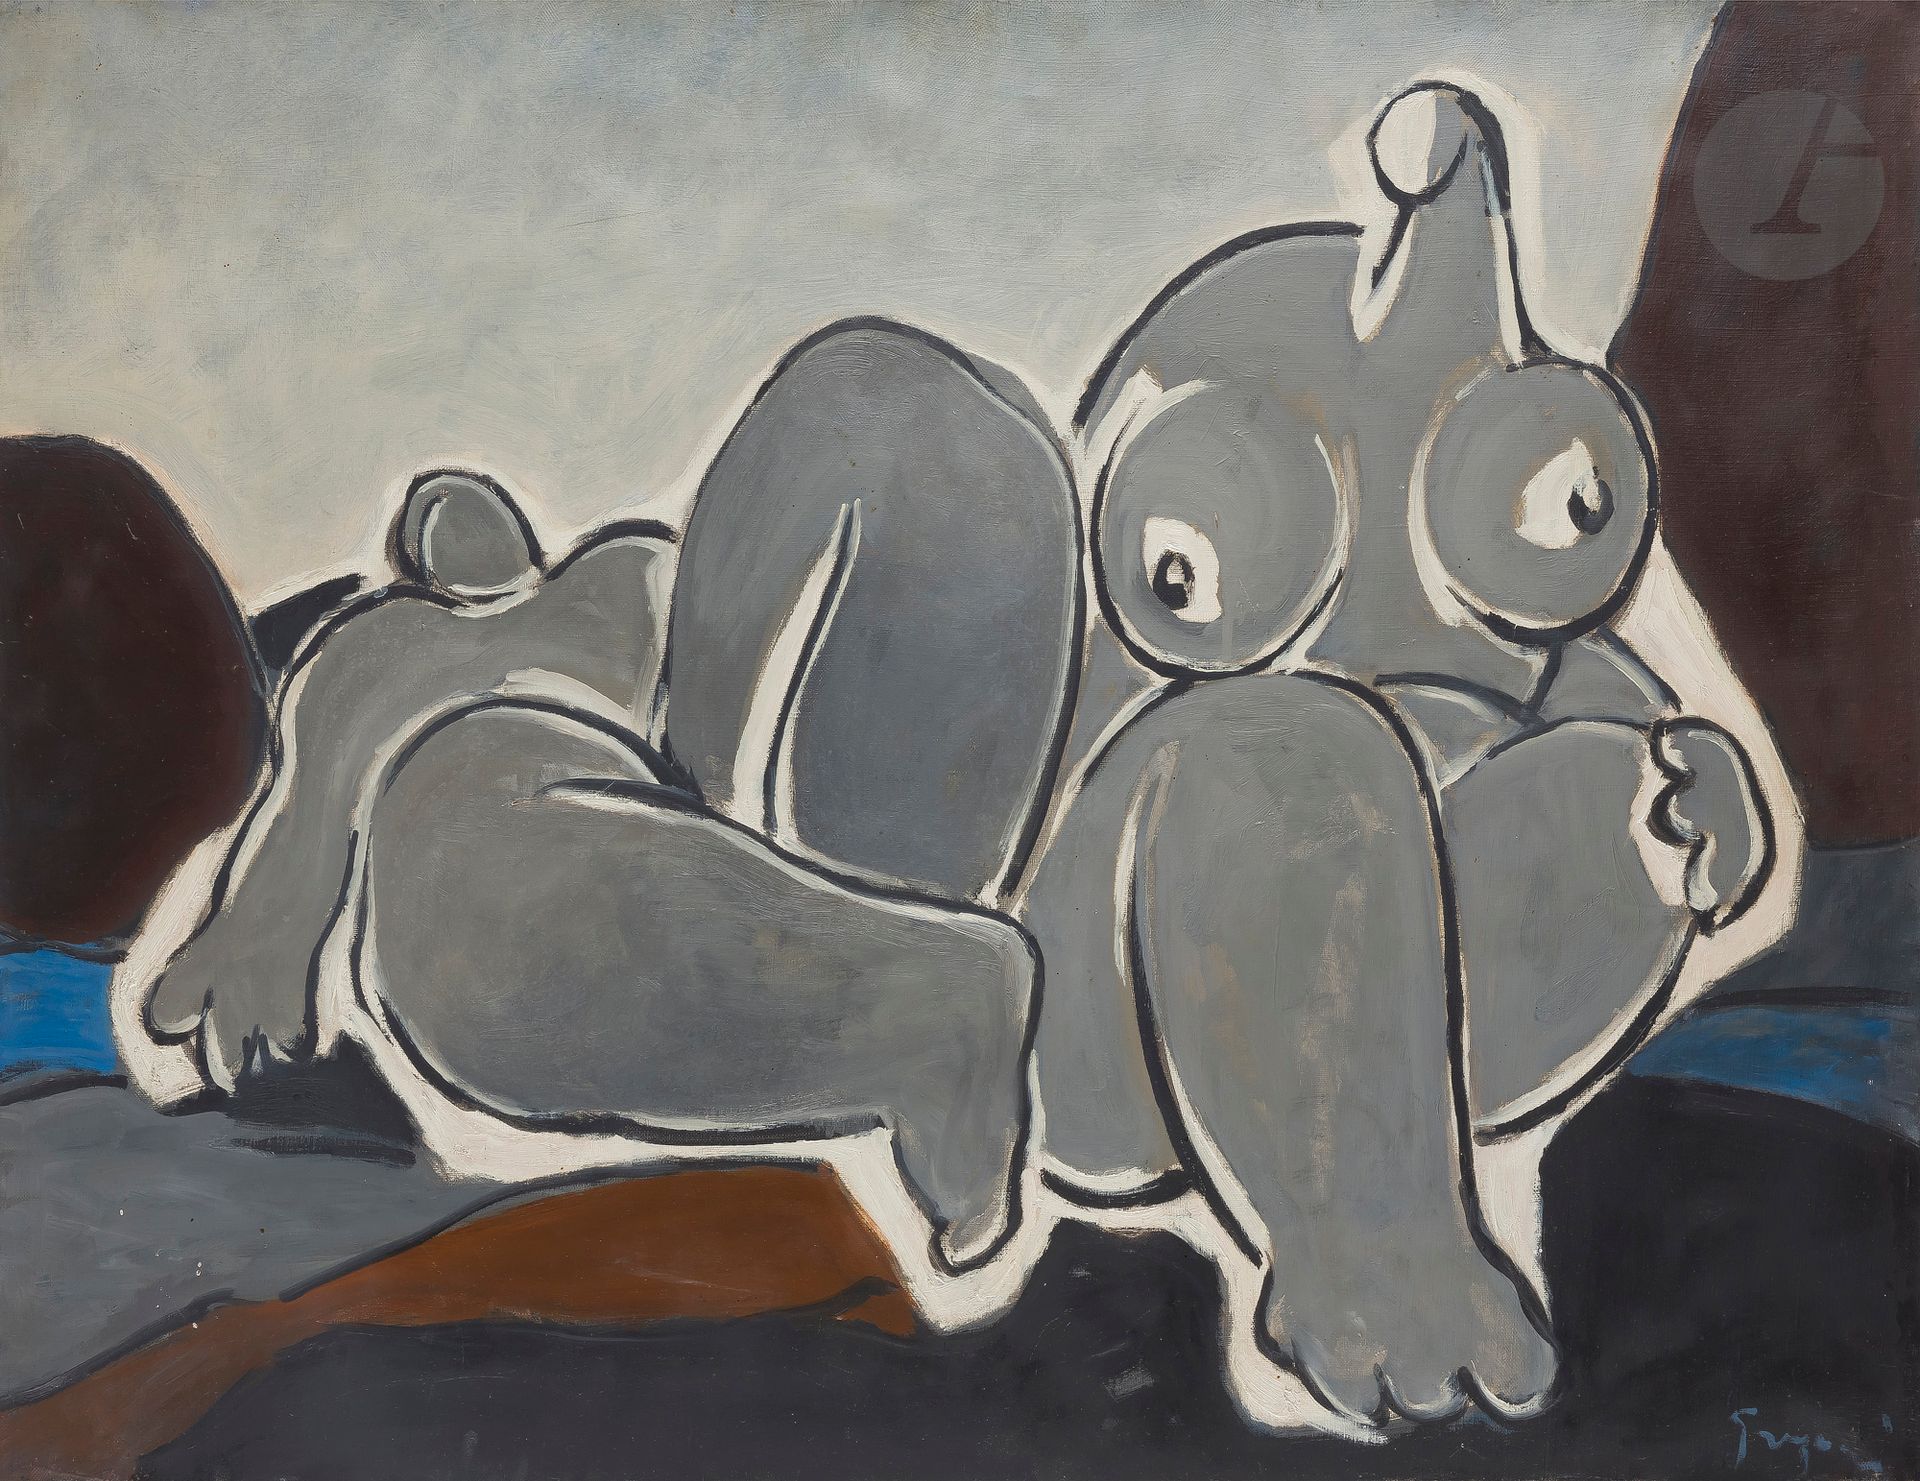 Null Gino GREGORI [意大利] (1906-1973
)两幅裸体画
布面
油画
。
右下方有签名
60 x 92 cm